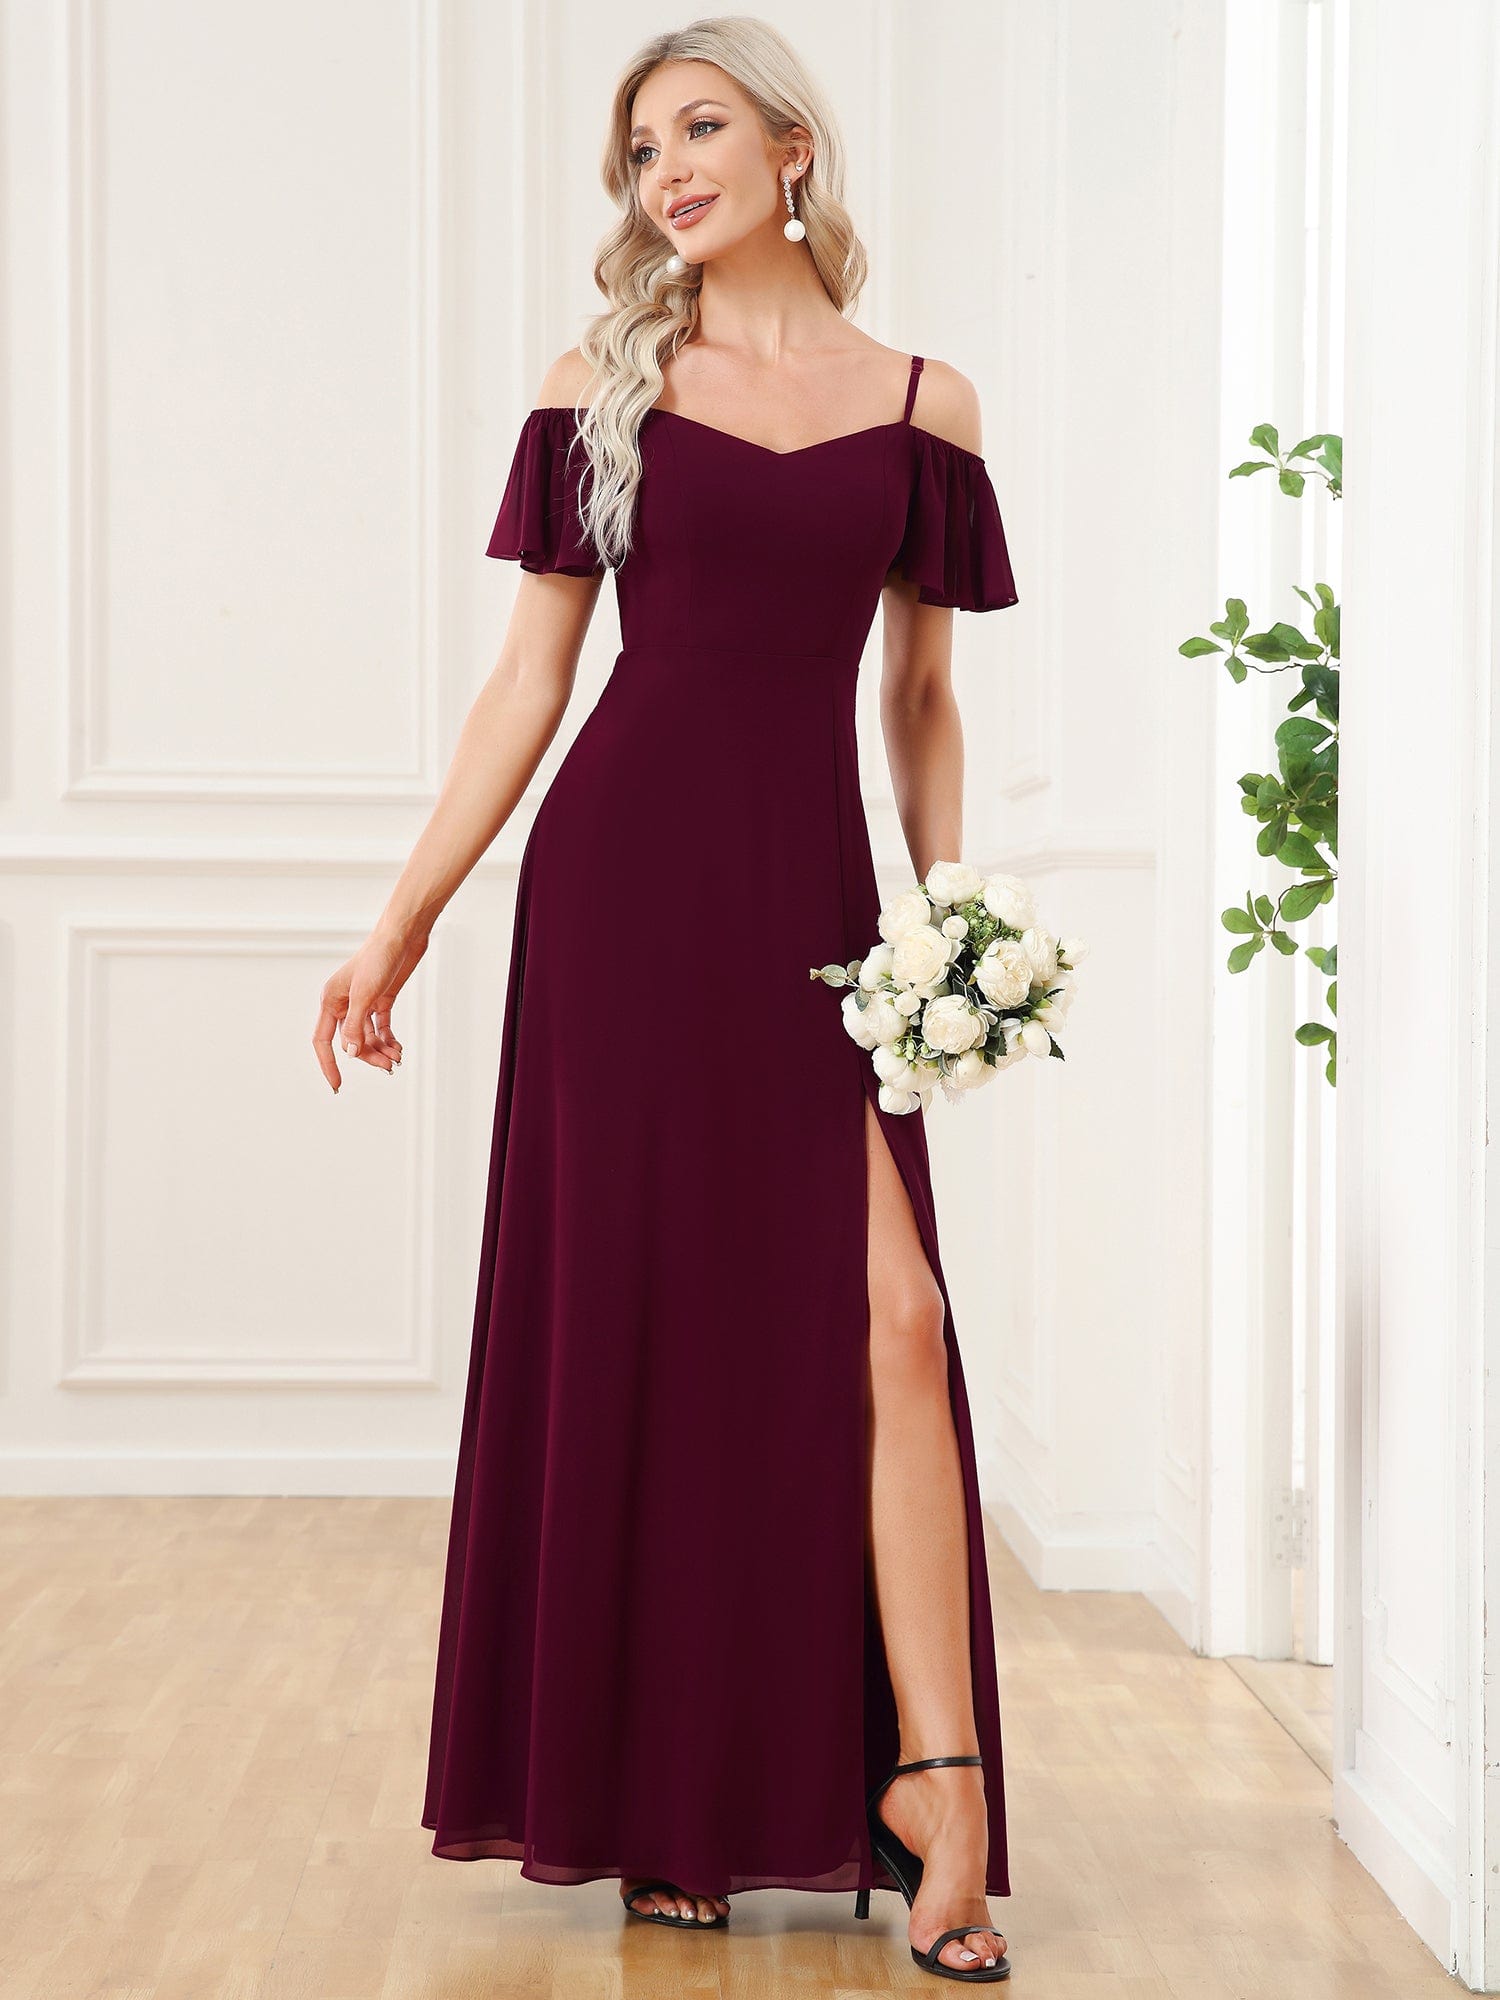 Custom Size Cold Shoulder Formal Bridesmaid Dress with Side Slit